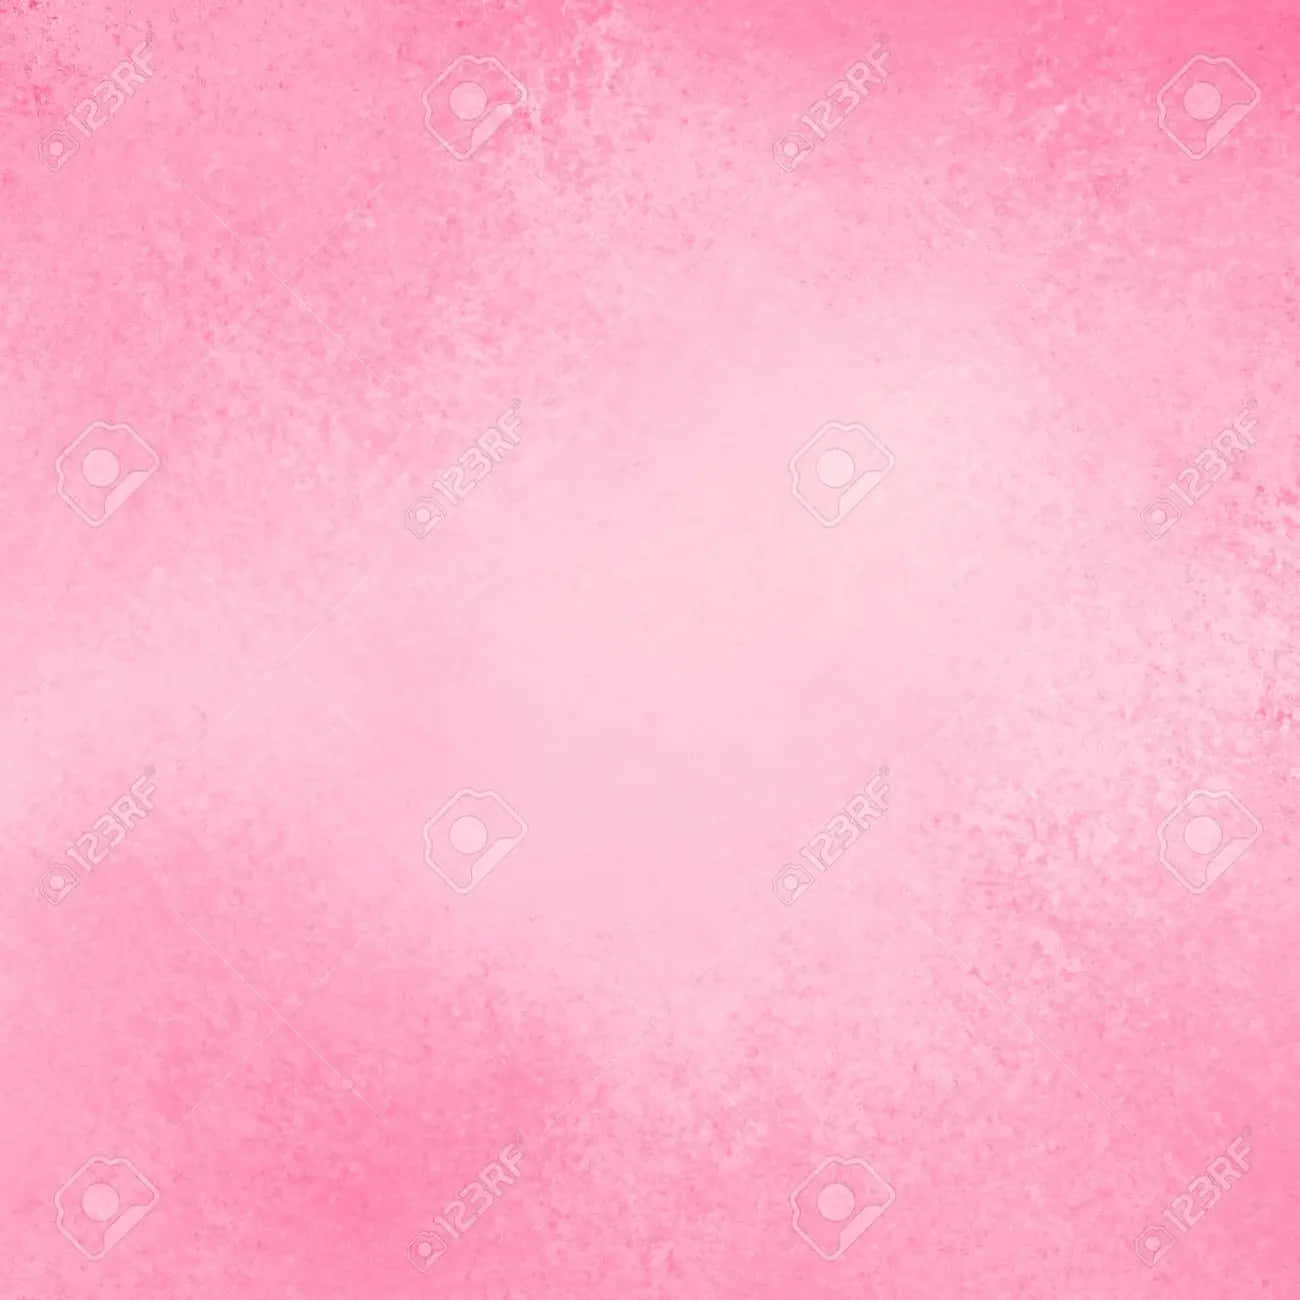 Unbellissimo Muro Di Colore Rosa Solido E Vibrante. Sfondo